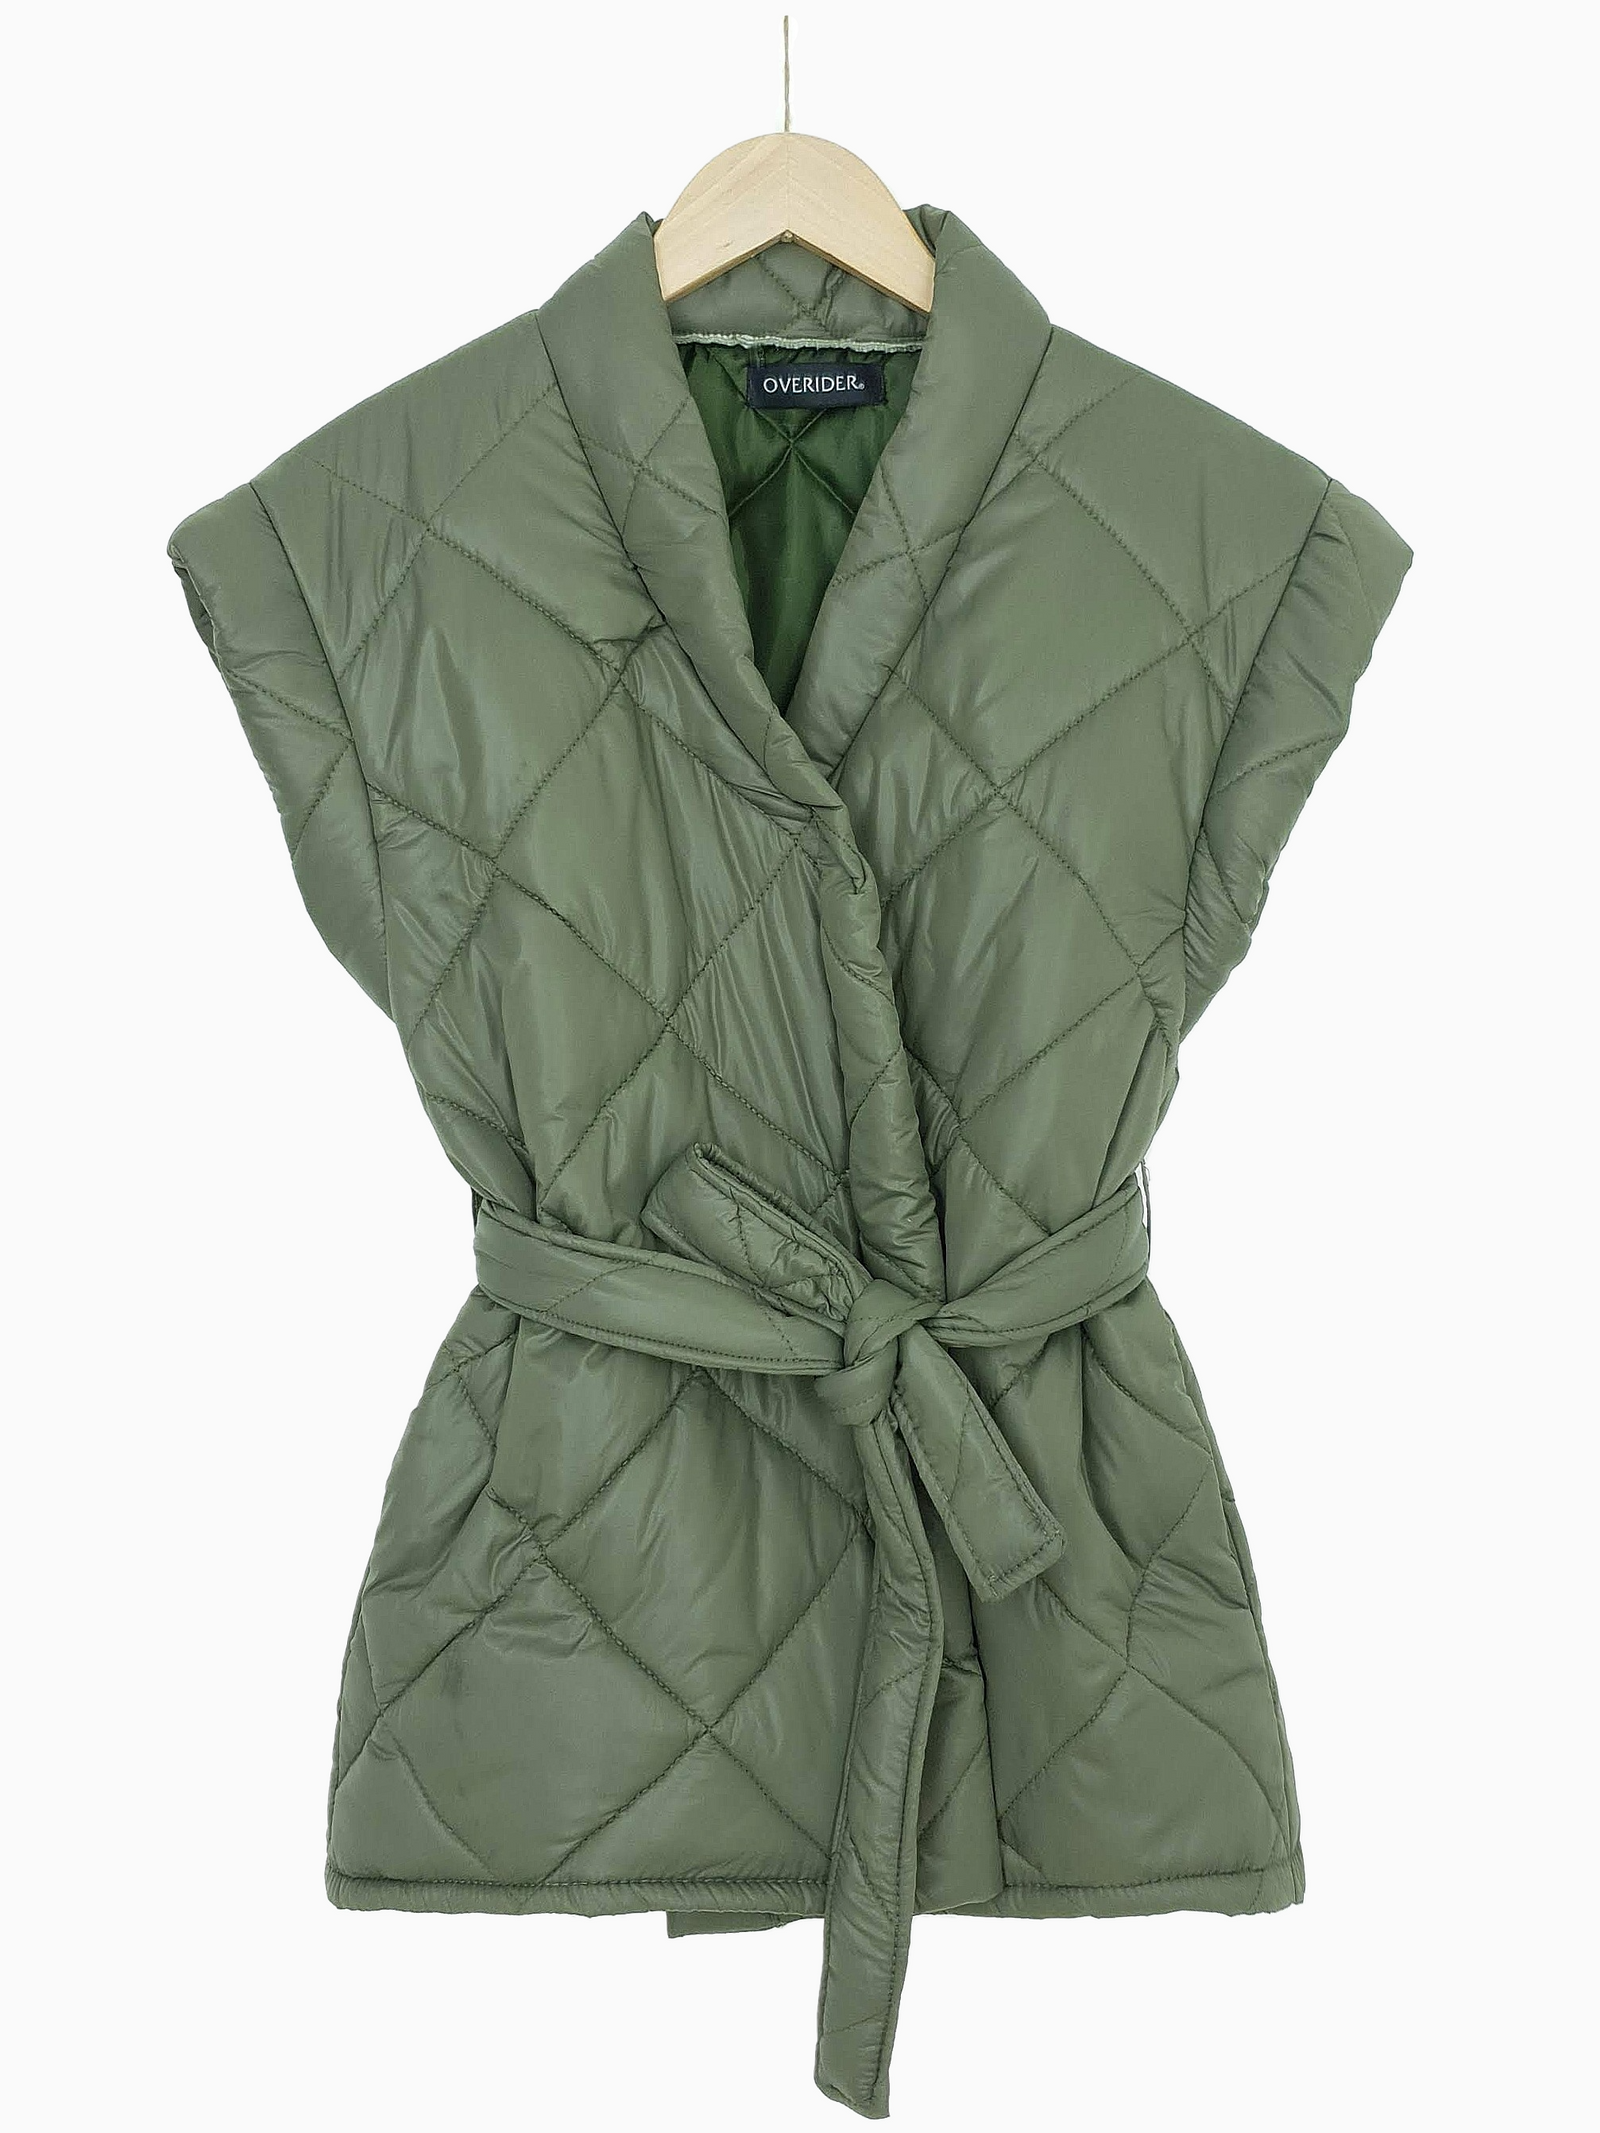 YEVA | Quilted Wrap Sleeveless Jacket | Olive